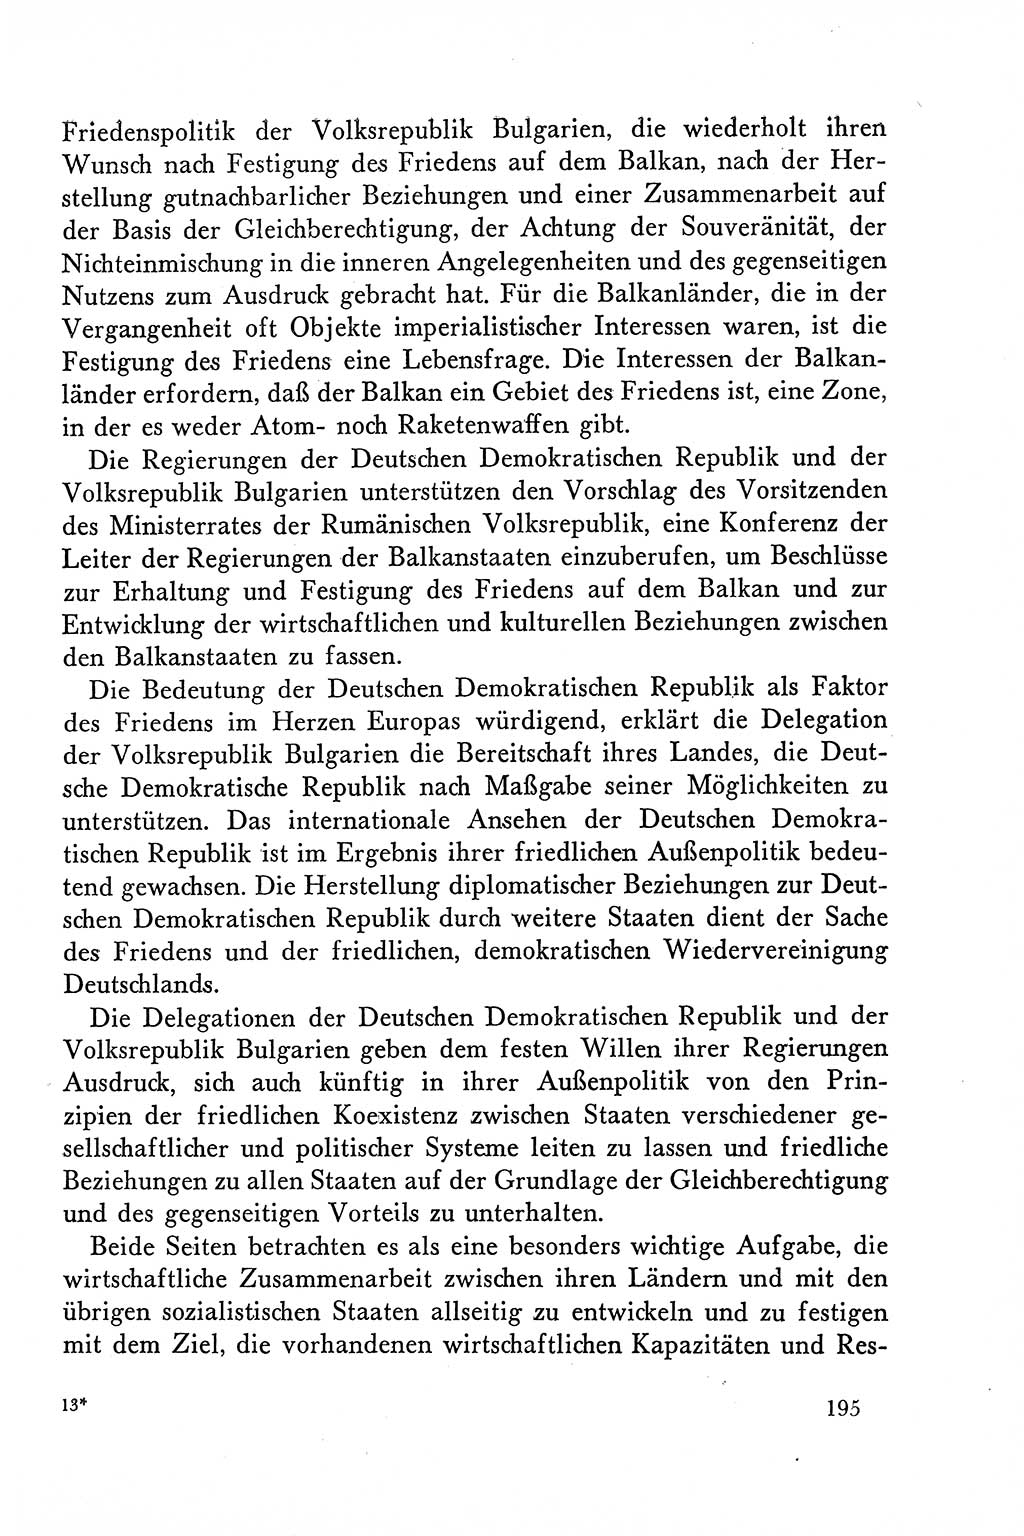 Dokumente der Sozialistischen Einheitspartei Deutschlands (SED) [Deutsche Demokratische Republik (DDR)] 1958-1959, Seite 195 (Dok. SED DDR 1958-1959, S. 195)